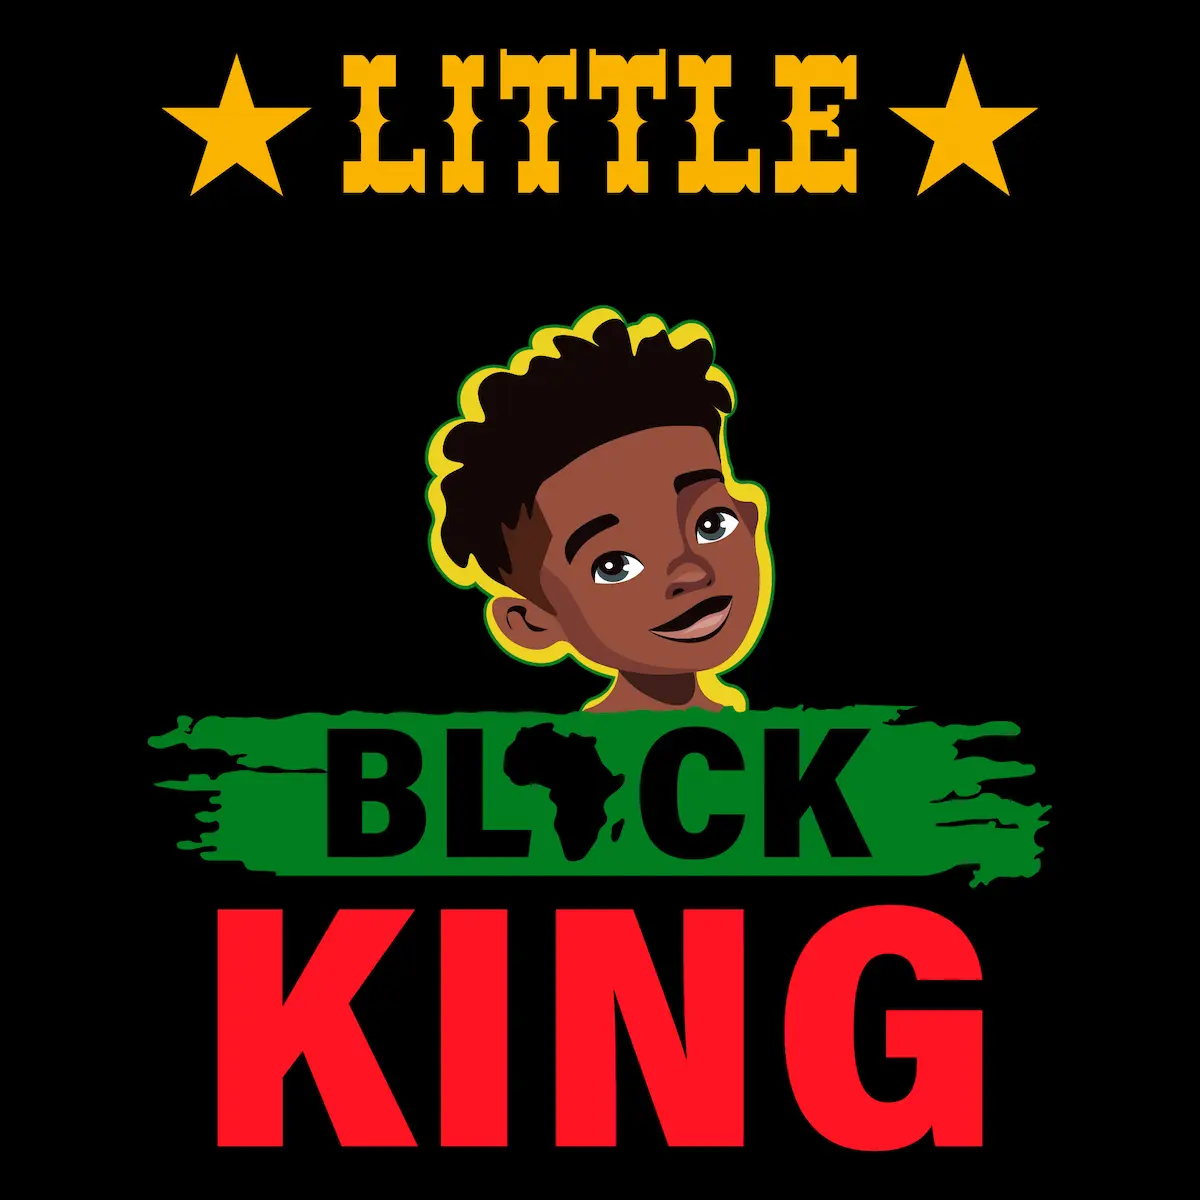 Little Black King